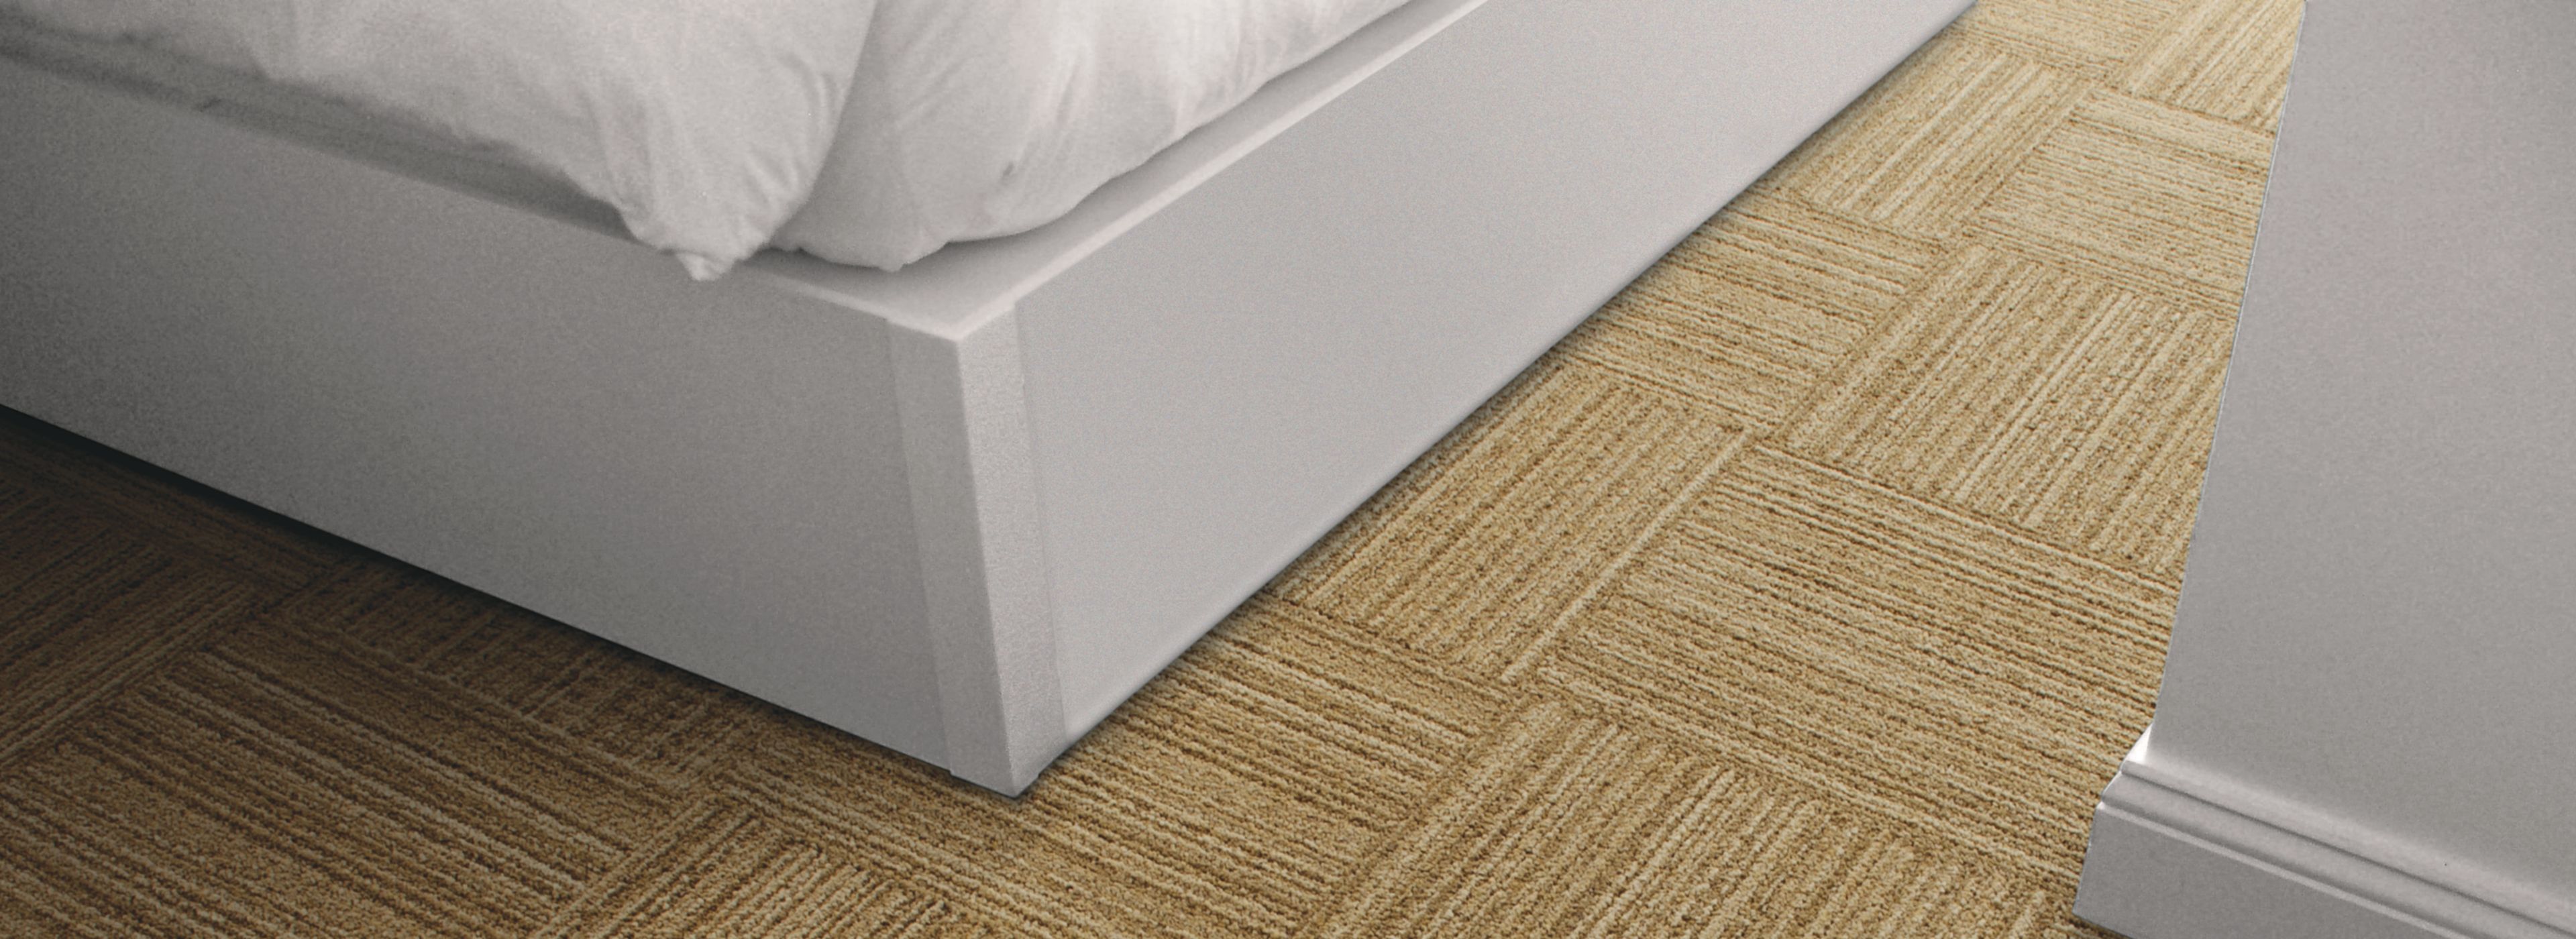 Detail of Interface RMS 103 carpet tile imagen número 1